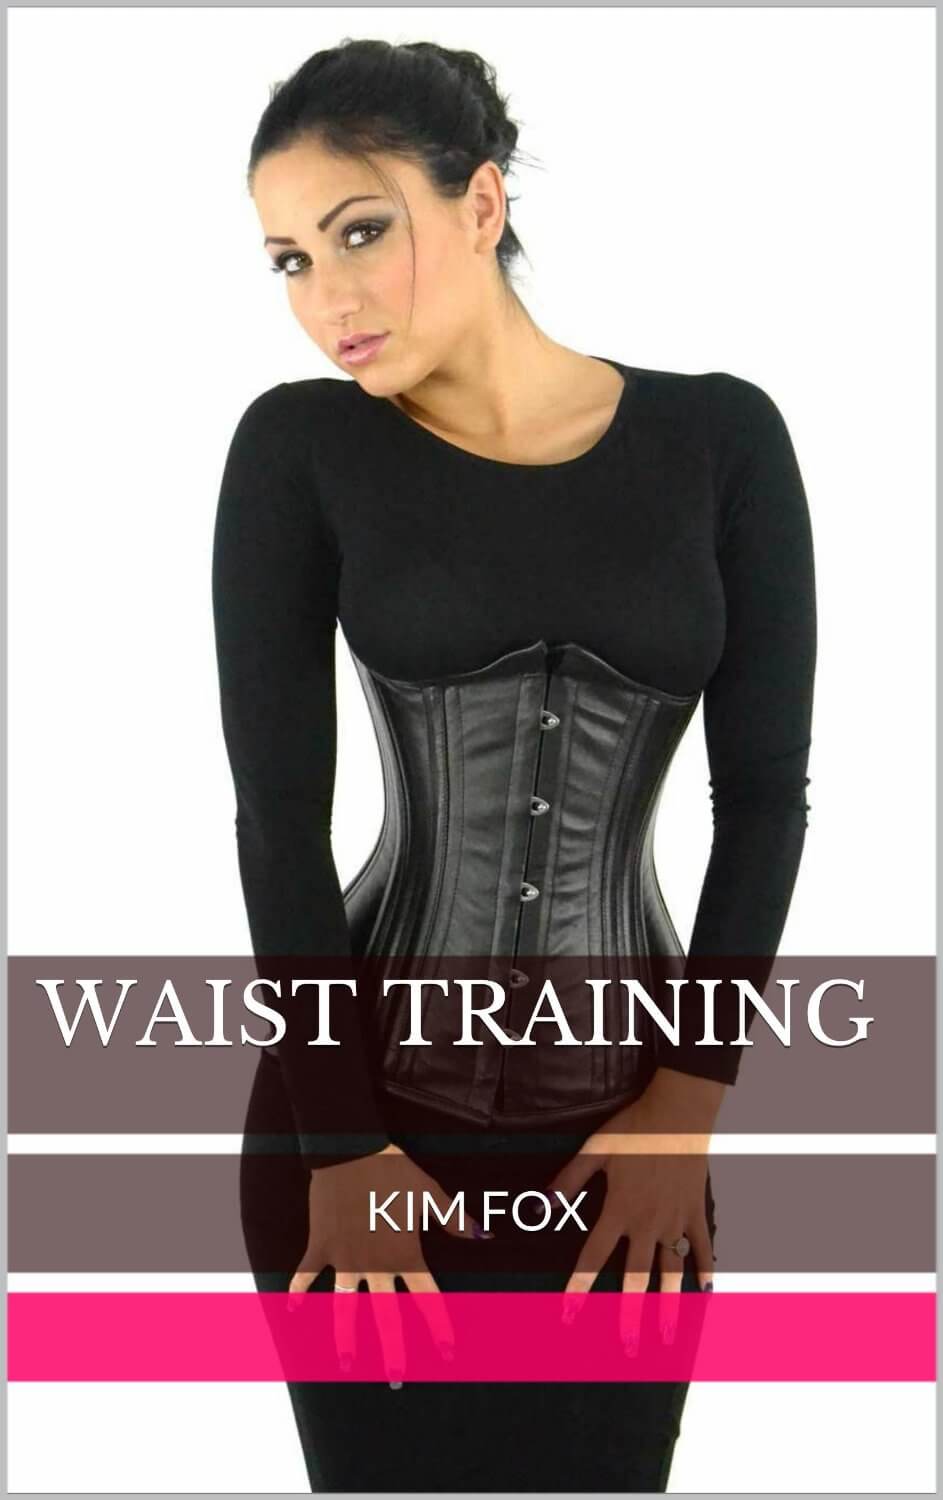 Waist Training by Kim Fox